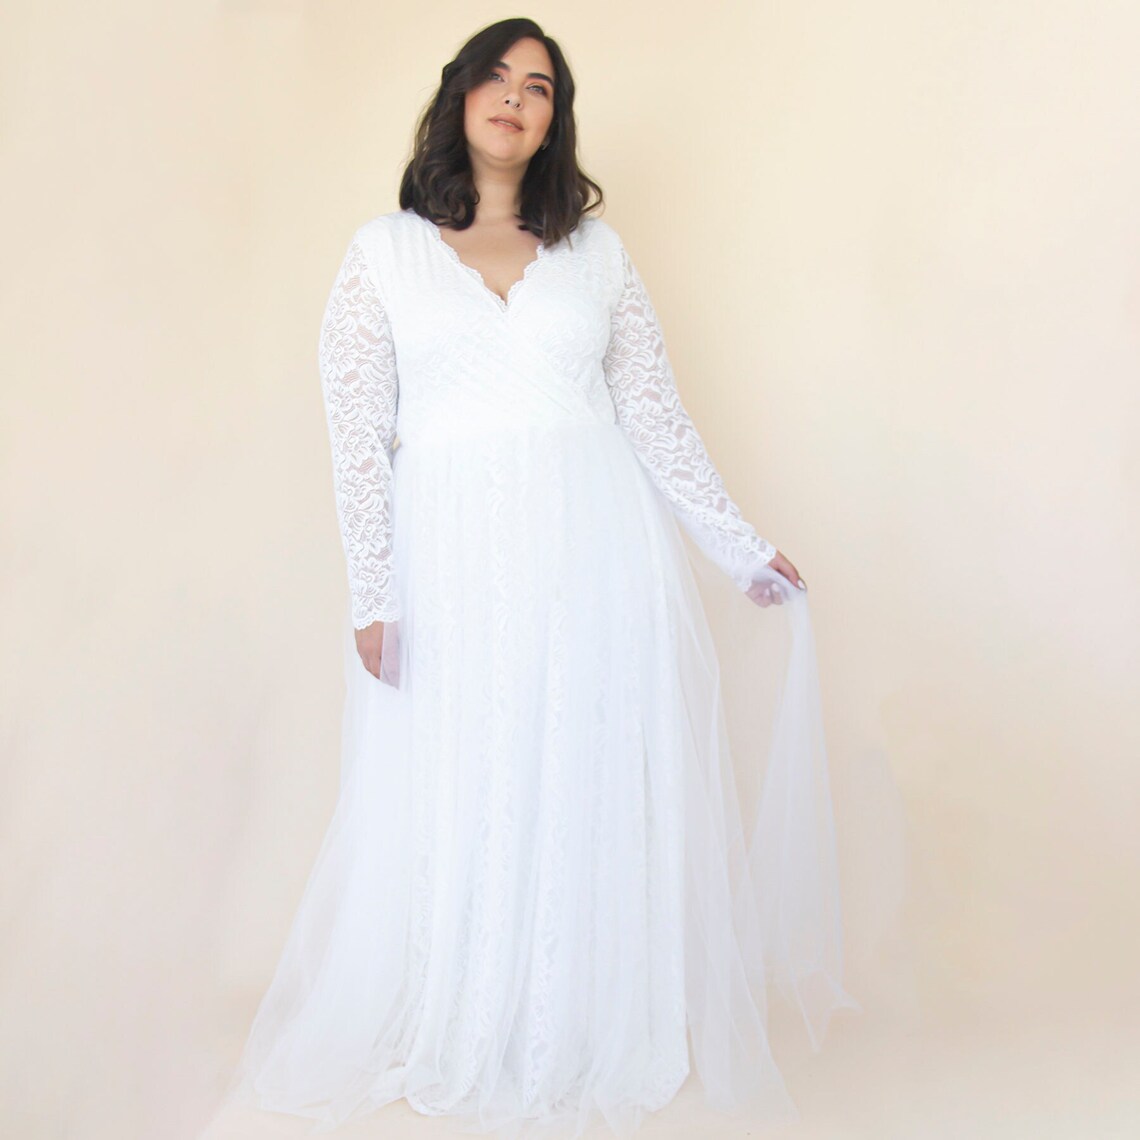 Bestseller Ivory Wedding Dress  Sheer Illusion Tulle Skirt on image 1